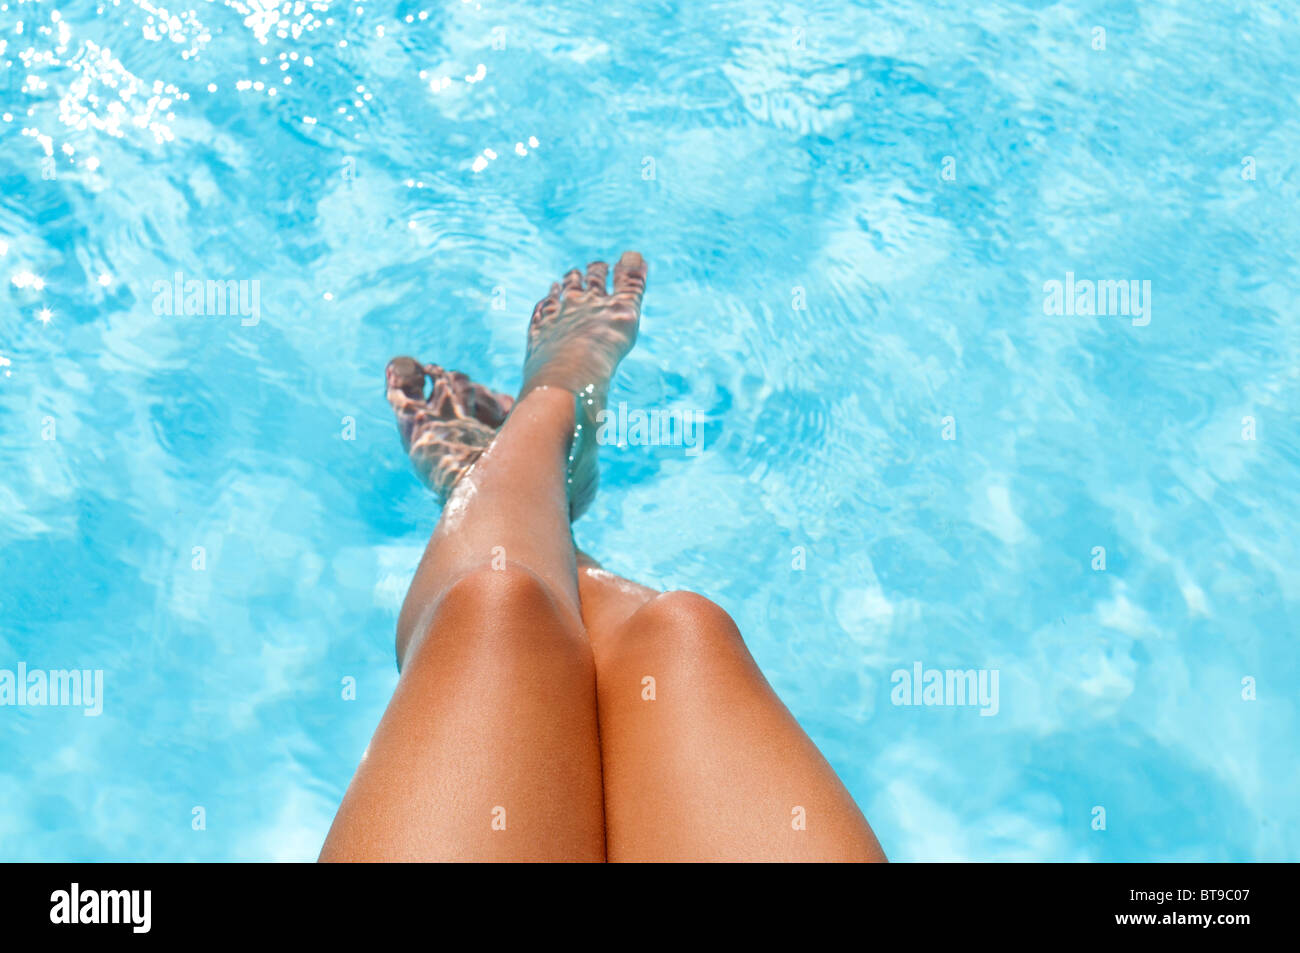 Une jeune femme trempant ses pieds dans une piscine Banque D'Images